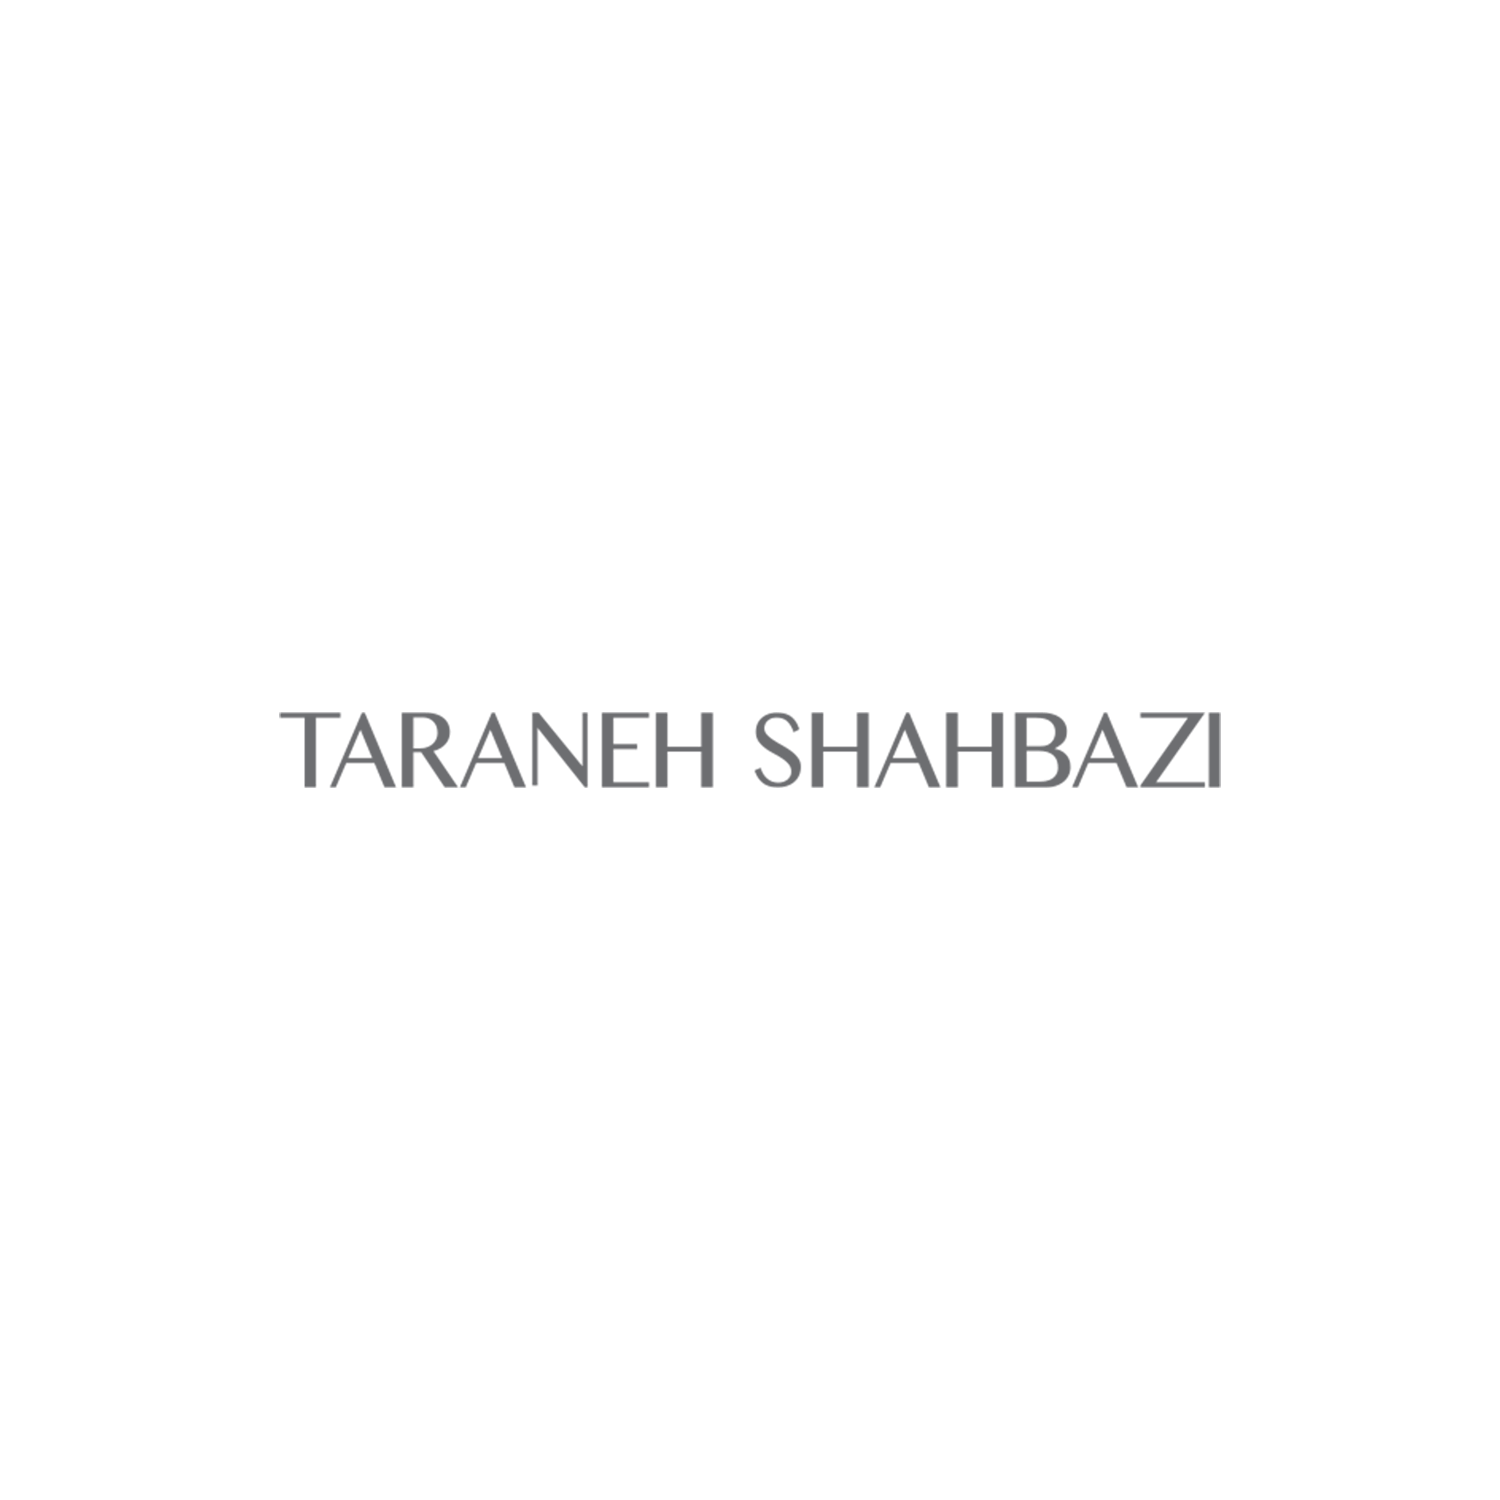 Taraneh Shahbazi